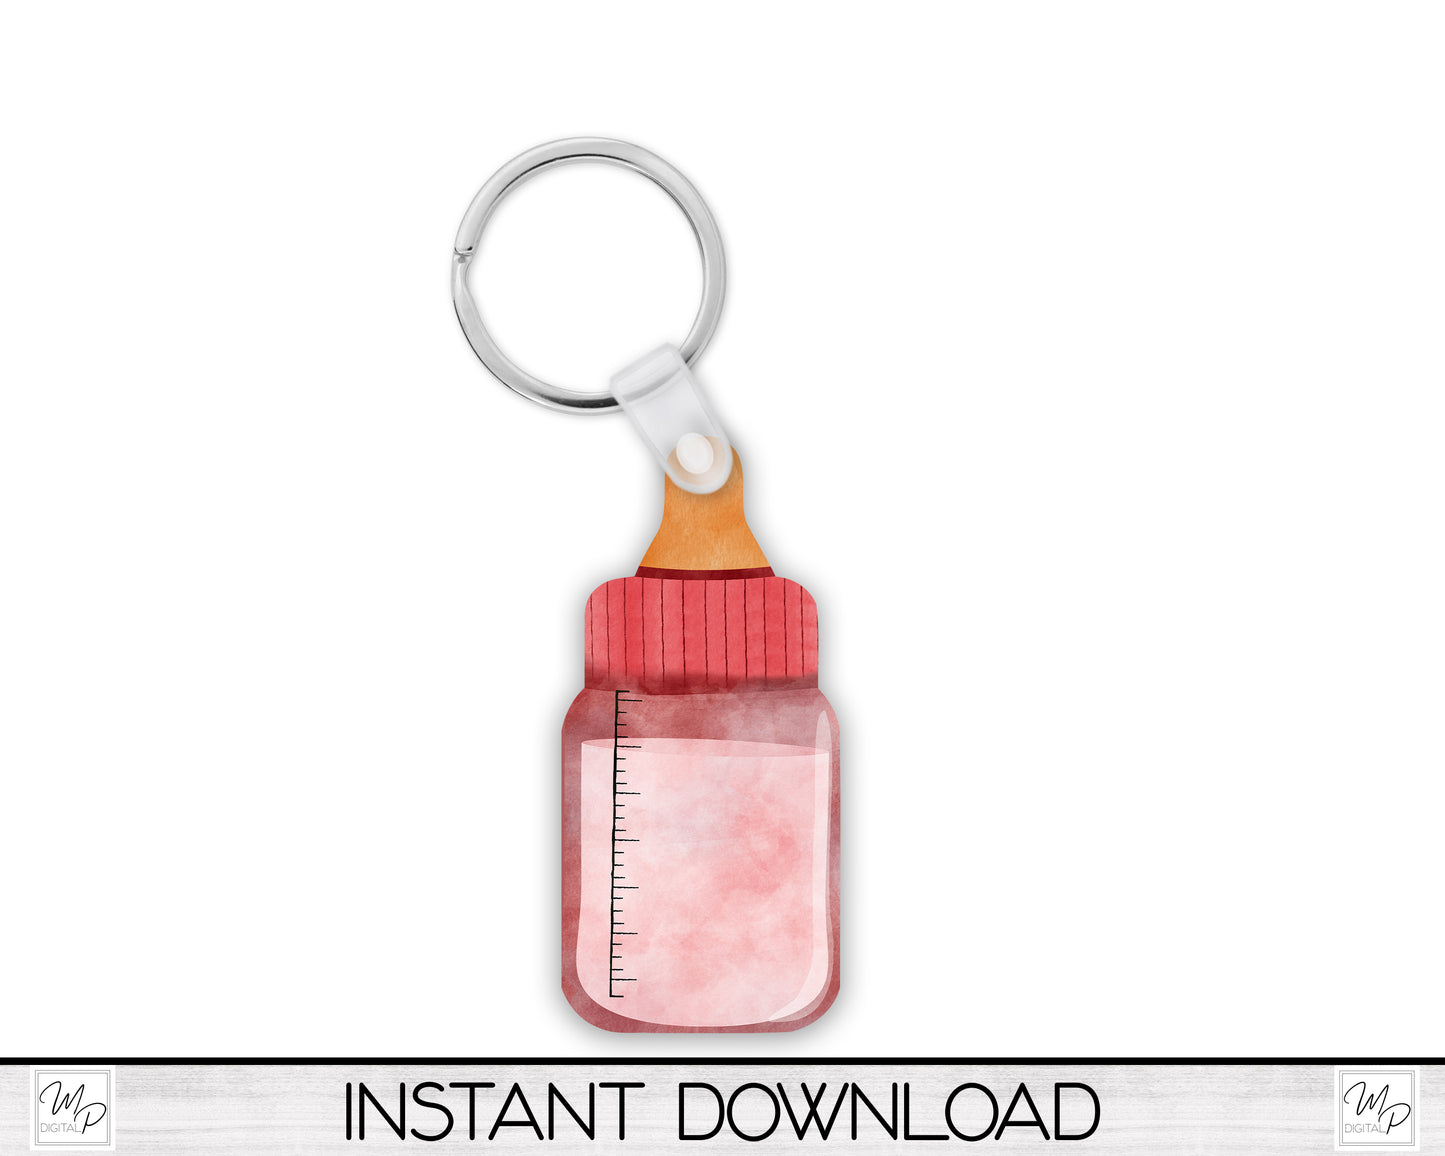 Pink Baby Bottle Ornament / Sign BUNDLE PNG for Sublimation, Digital Design Download